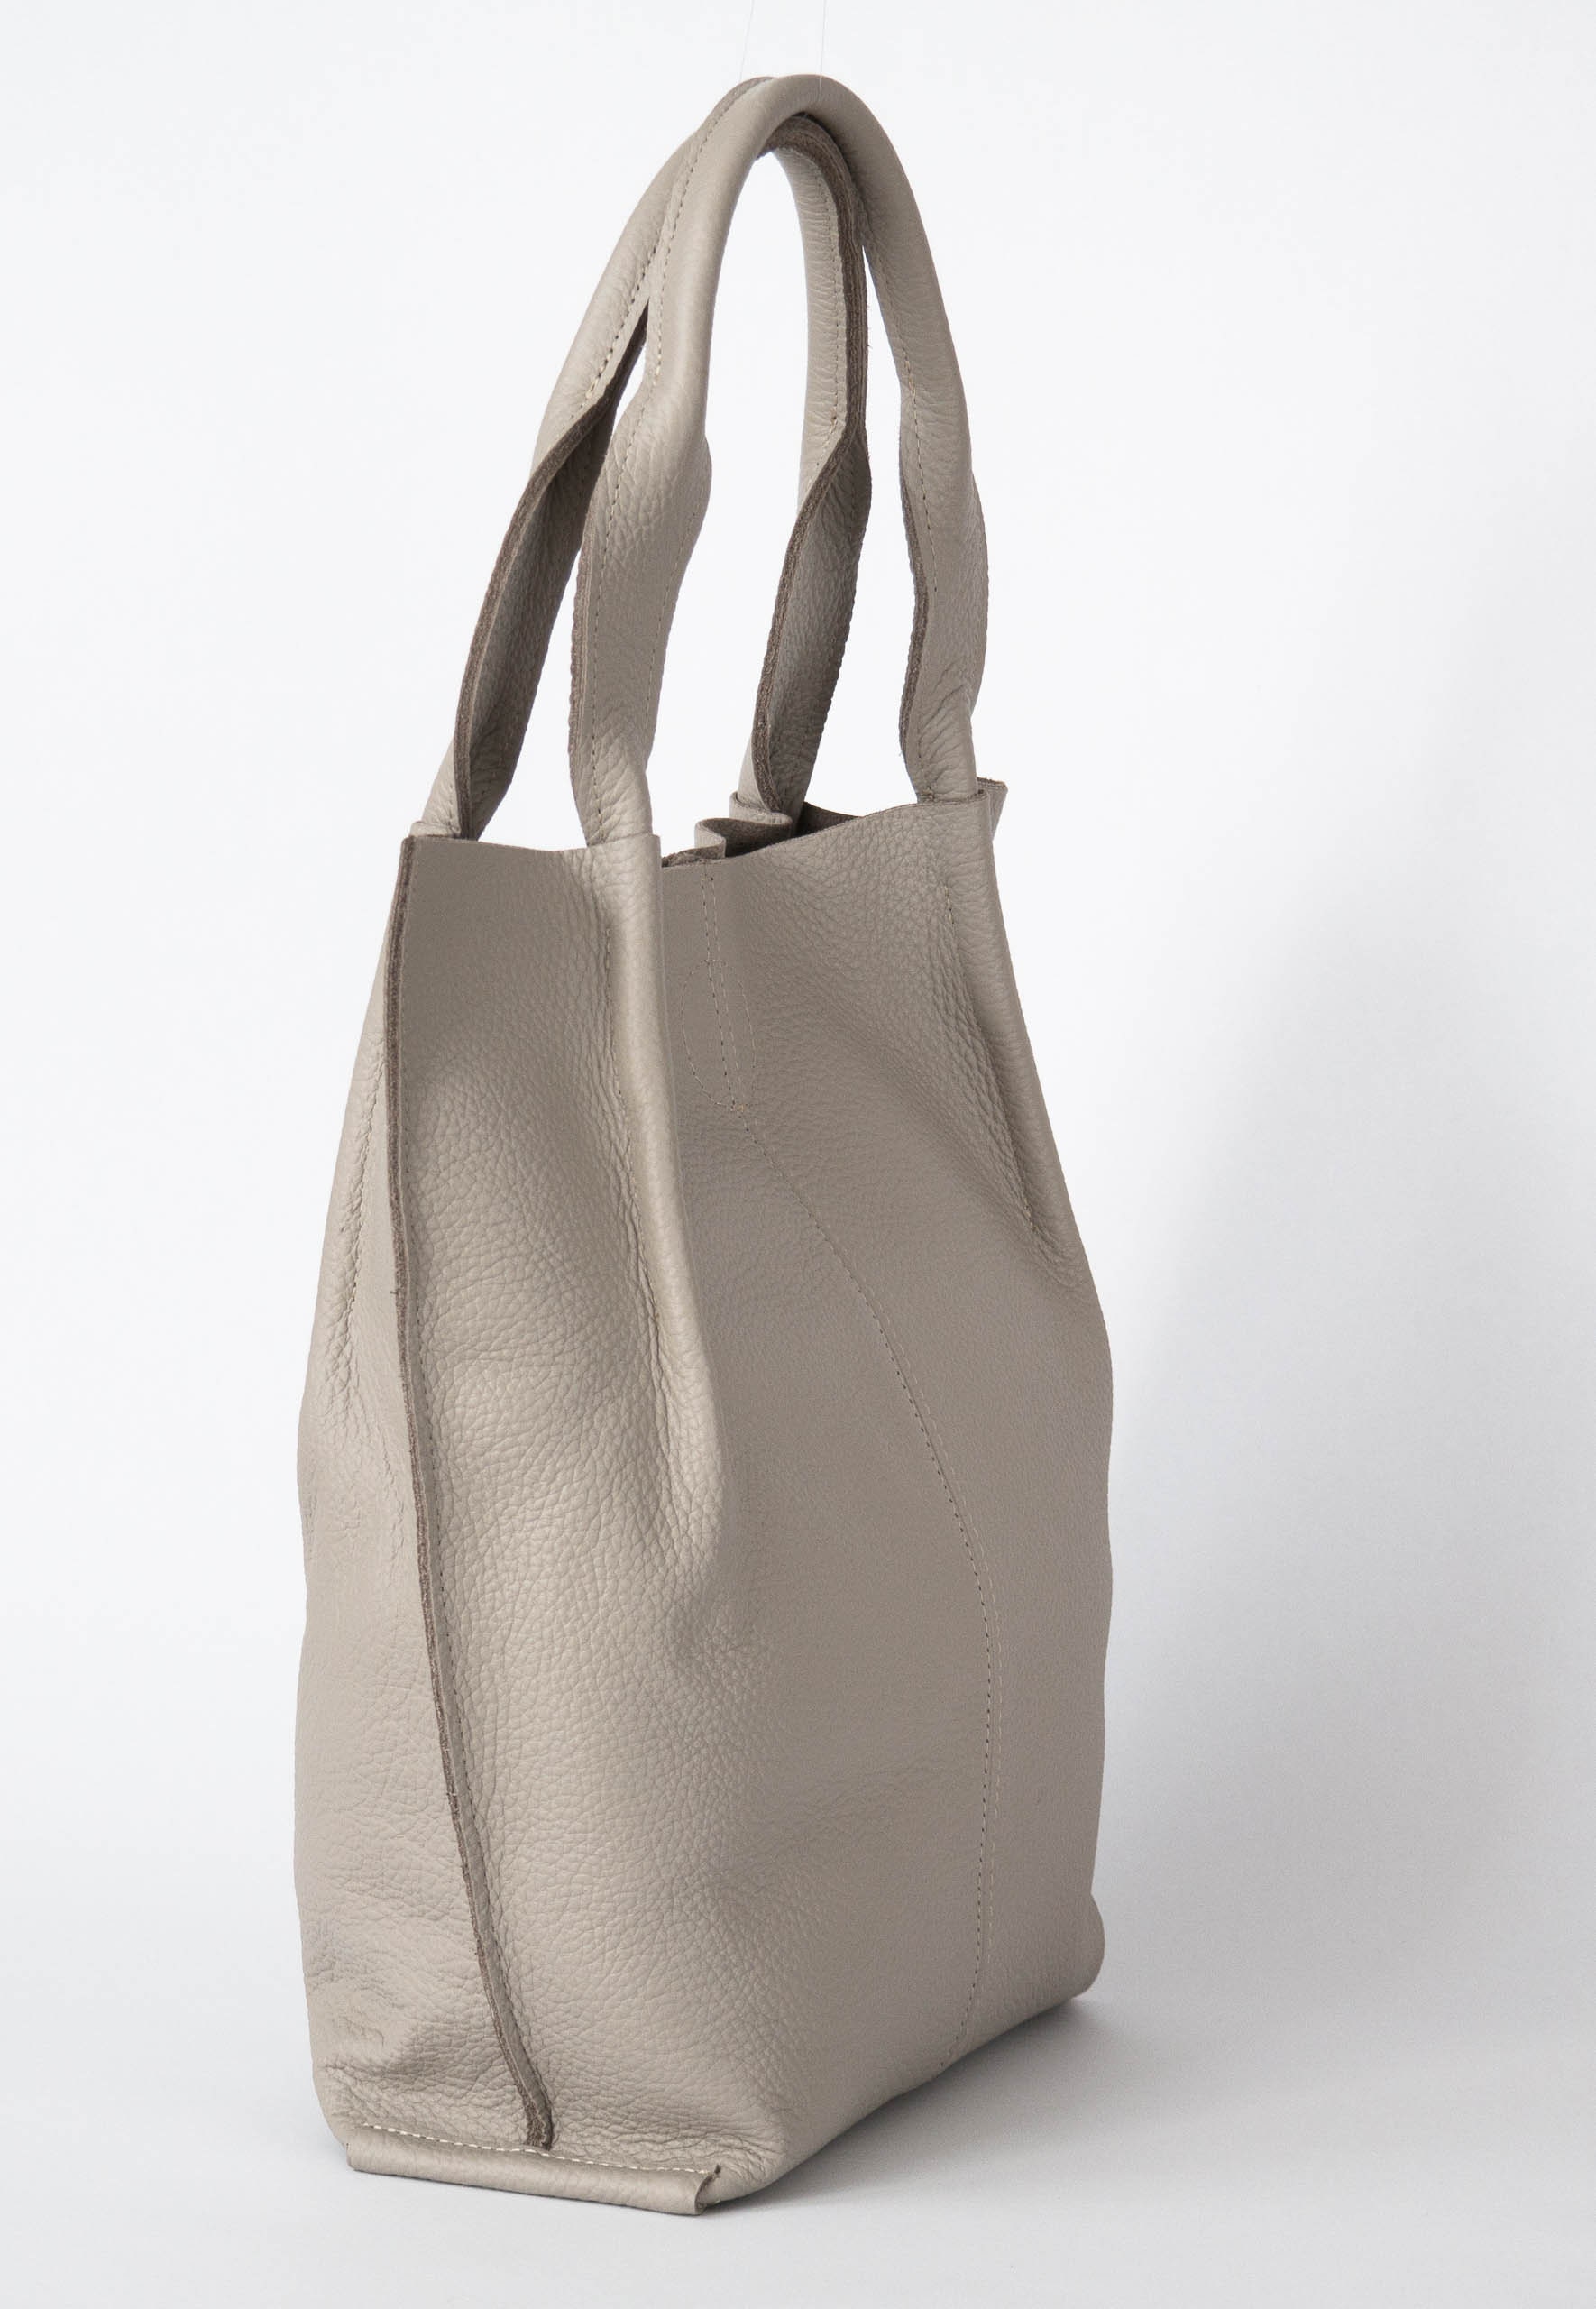 Leather Tote Bag Large Handbag Leather Shopper Bag Large | Etsy